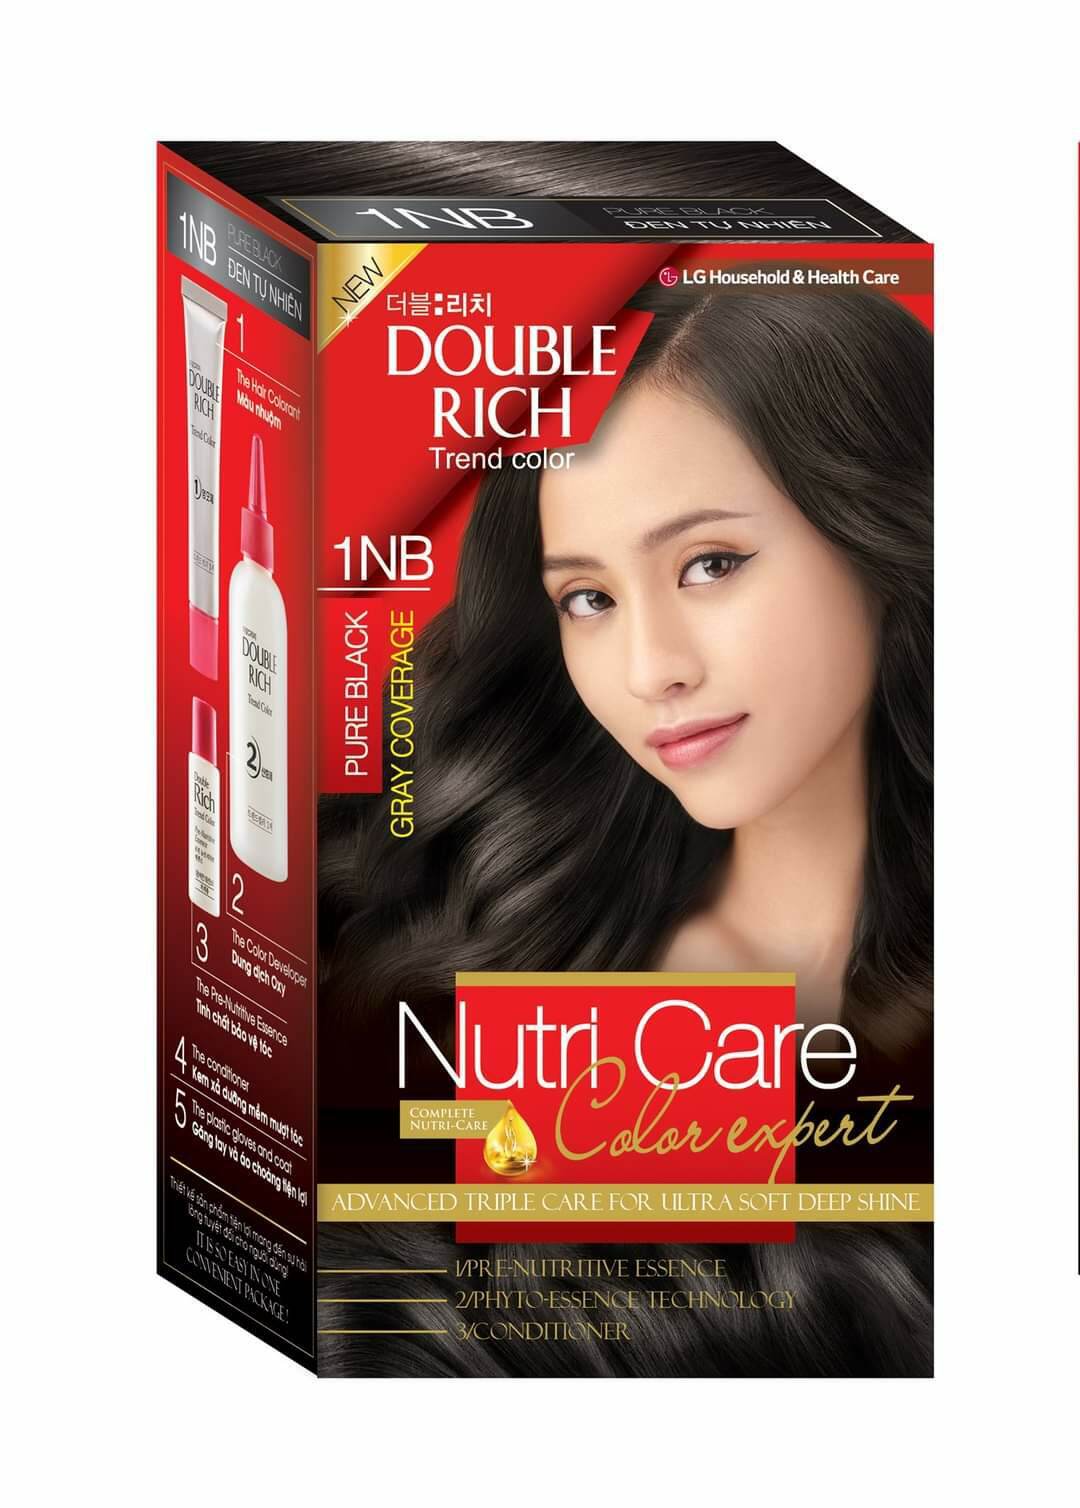 Với Double Rich, bạn sẽ duy trì được mái tóc mượt mà, khỏe đẹp và dày hơn bao giờ hết. Đây là sản phẩm được yêu thích bởi những khách hàng khó tính nhất, và sẵn sàng chinh phục bạn bởi chất lượng đỉnh cao.